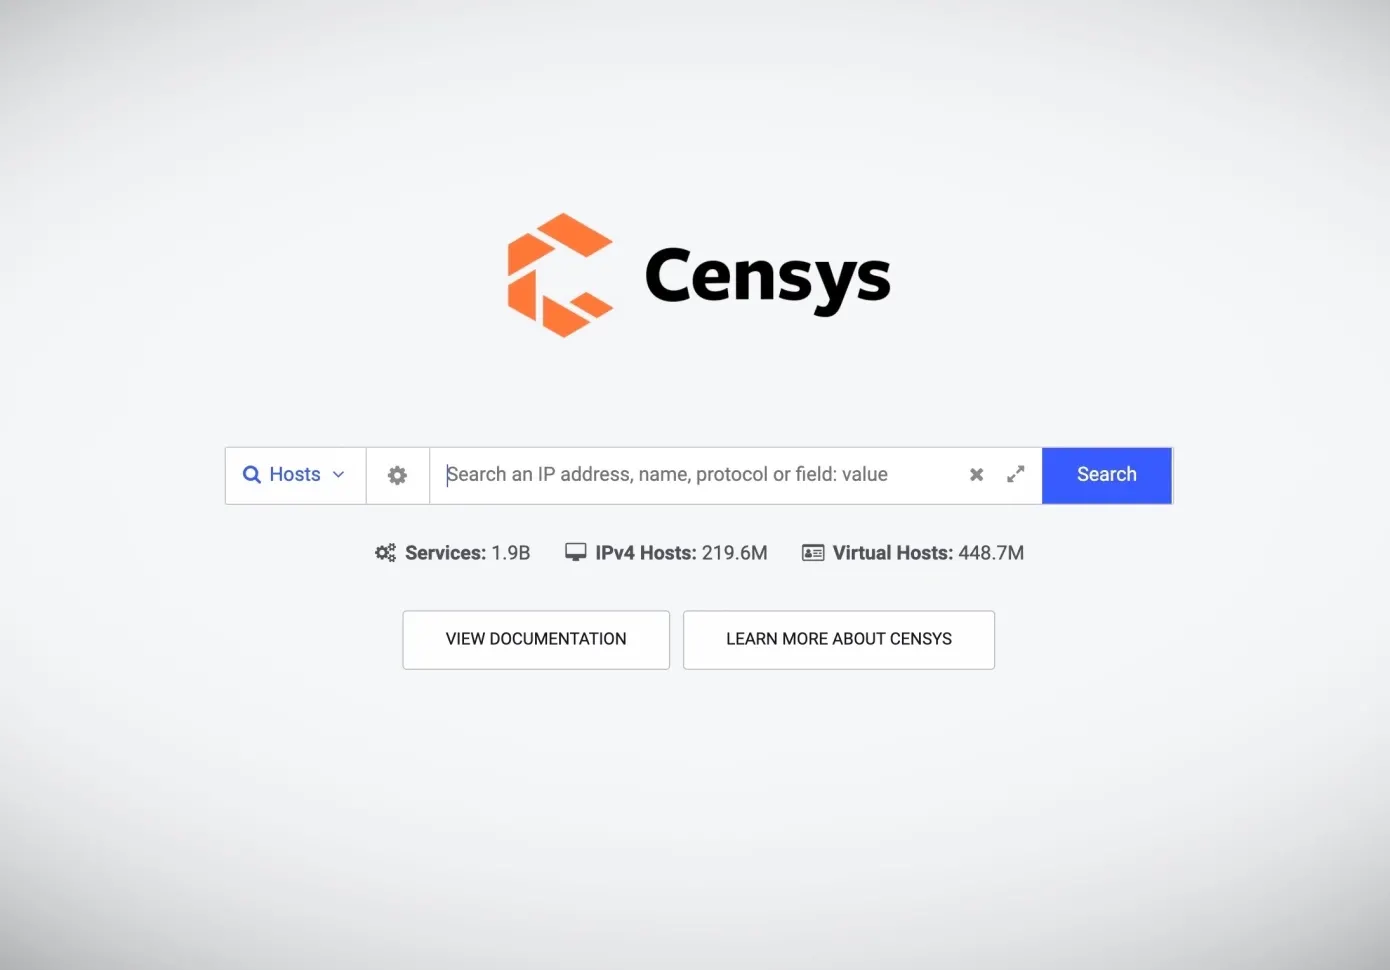 物联网搜索引擎Censys完成3500万B轮融资